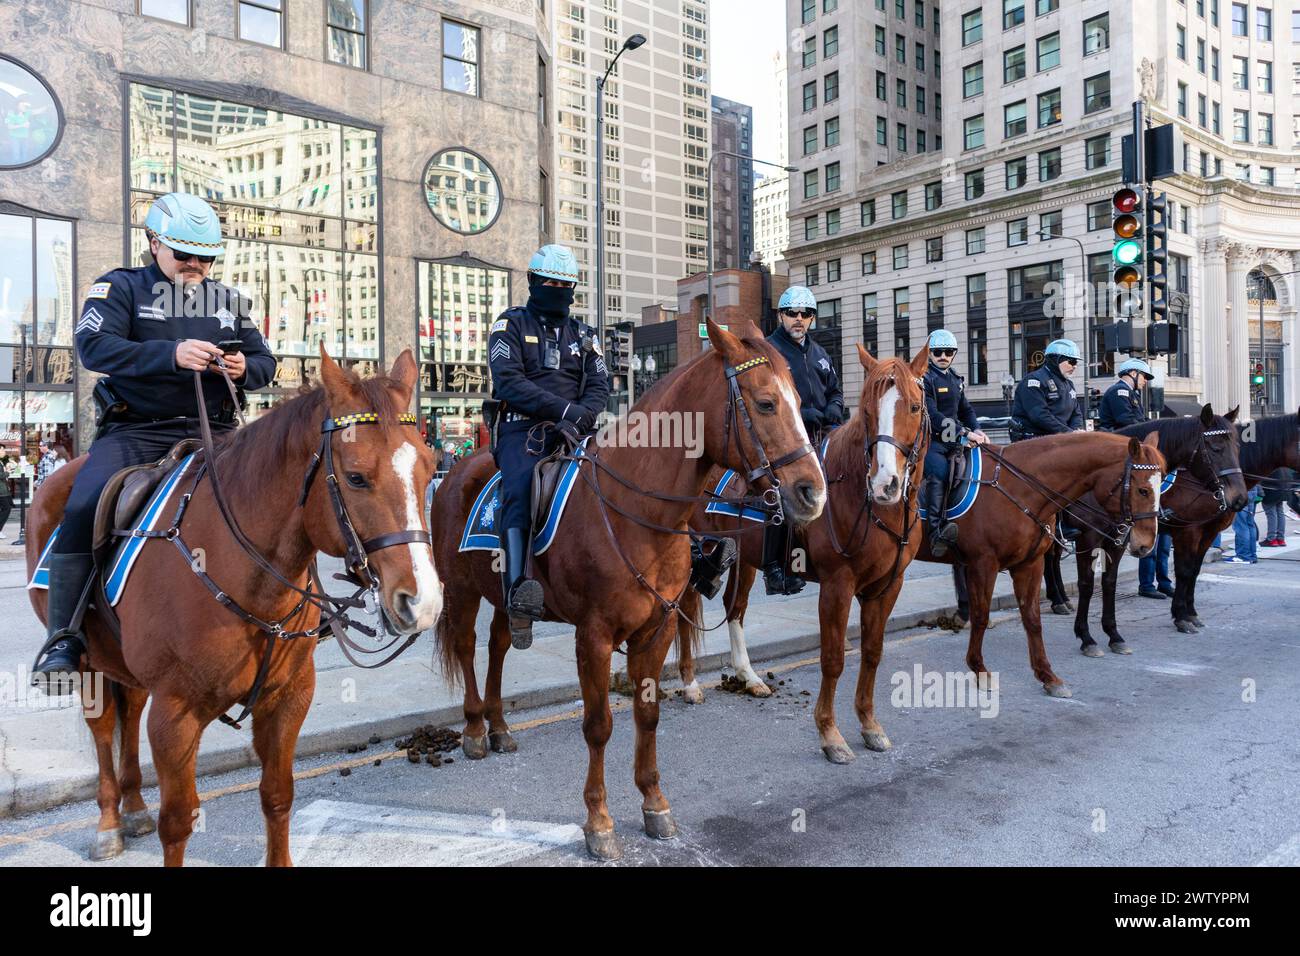 Le département de police de Chicago a monté une patrouille lors d'un grand événement dans le centre-ville de Chicago Illinois utilisation Banque D'Images